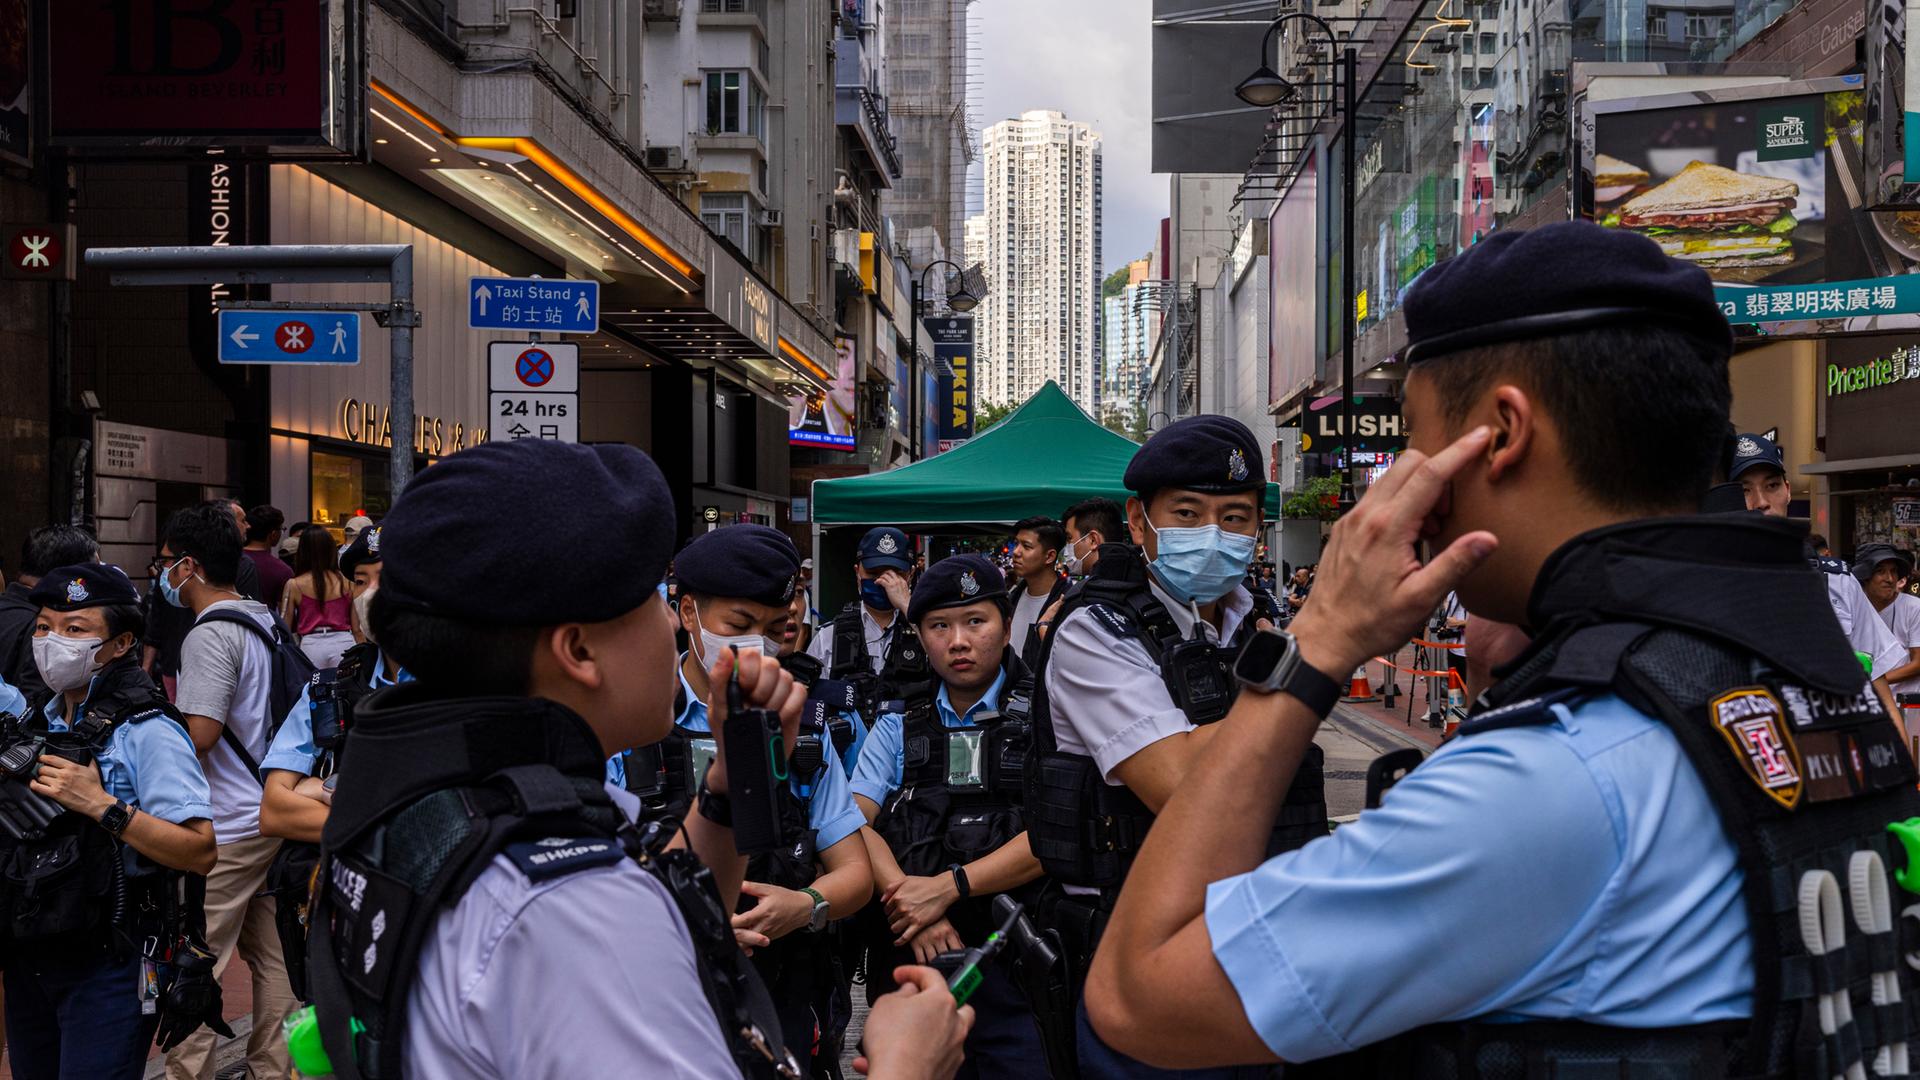 Männer und Frauen in blauen Polizeiuniformen stehen in einer Fußgängerzone, in der viele Menschen unterwegs sind.